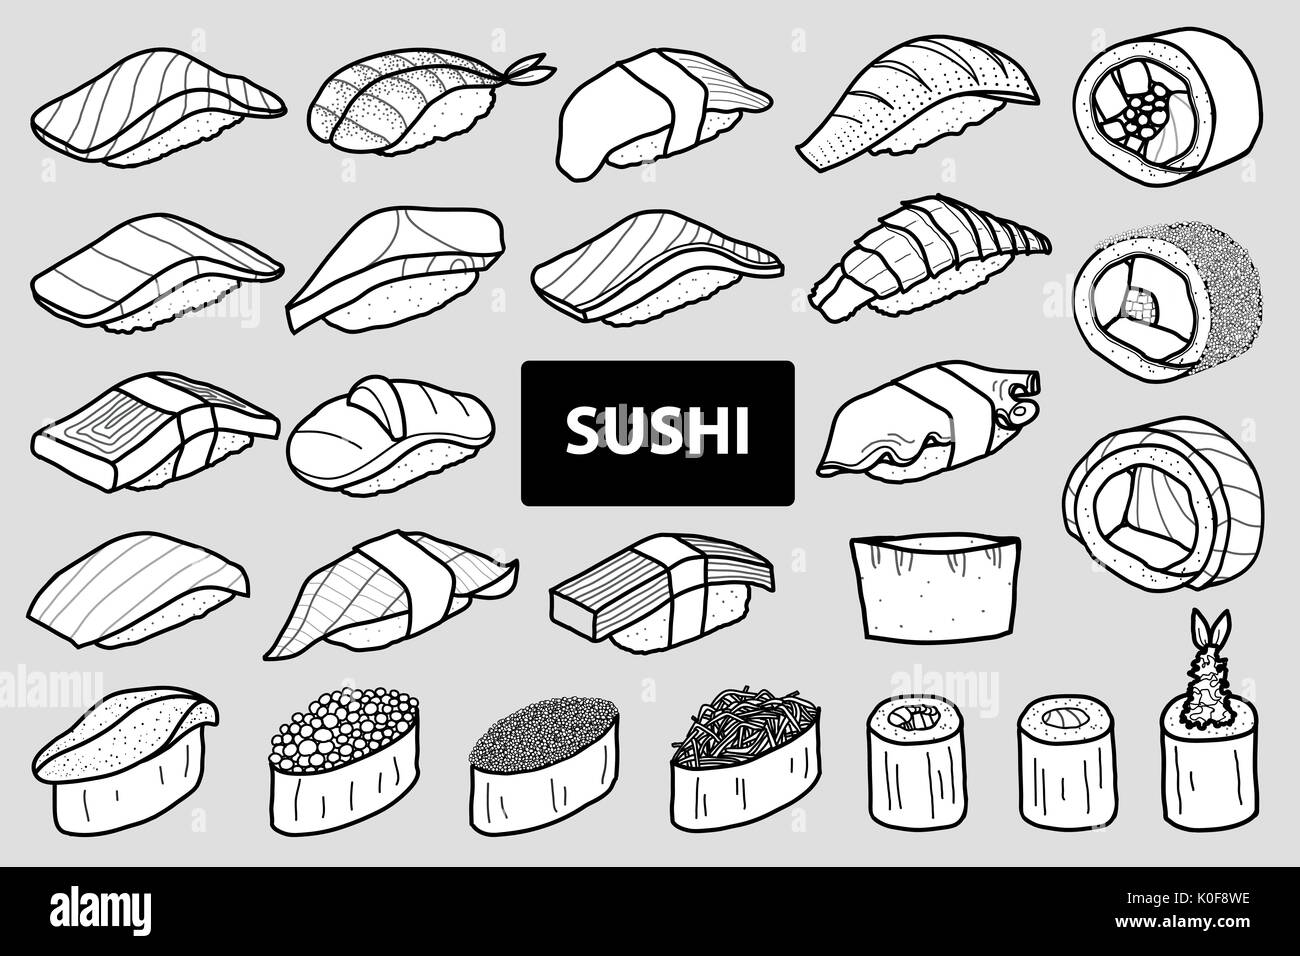 Satz mit 25 isolierte Sushi und Roll in schwarzer Umriss und weiße Ebene. Nettes japanisches Essen Abbildung Hand gezeichneten Stil. Stock Vektor